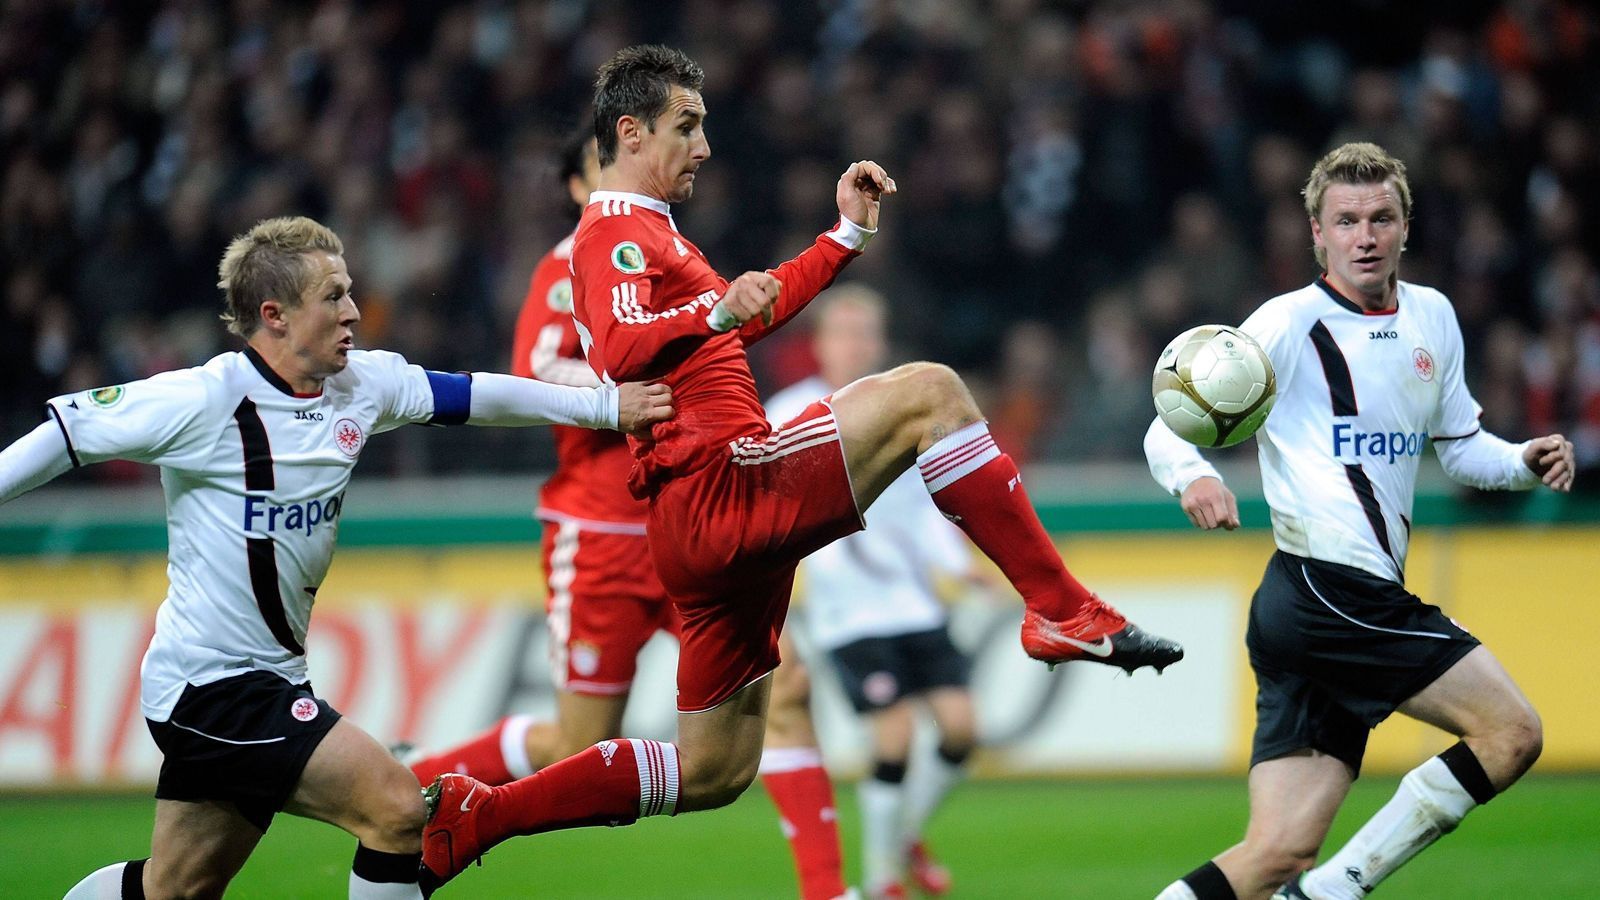 
                <strong>SGE-FCB-2009-DFB-Pokal</strong><br>
                DFB-Pokal, 2009/10: Eintracht Frankfurt - Bayern München 0:4 - Kloses DoppelpackDie letzte Begegnung im DFB-Pokal war eine einseitige Angelegenheit. Schon nach einer halben Stunde führten die Bayern im Achtelfinale nach einem Doppelpack von Miroslav Klose (Bild) und einem Treffer von Thomas Müller mit 3:0. Nach der Pause besorgte Luca Toni den 4:0-Endstand für hochüberlegene Münchener, die sich in der ersten Saison unter Louis van Gaal am Ende das Double sichern. 
              